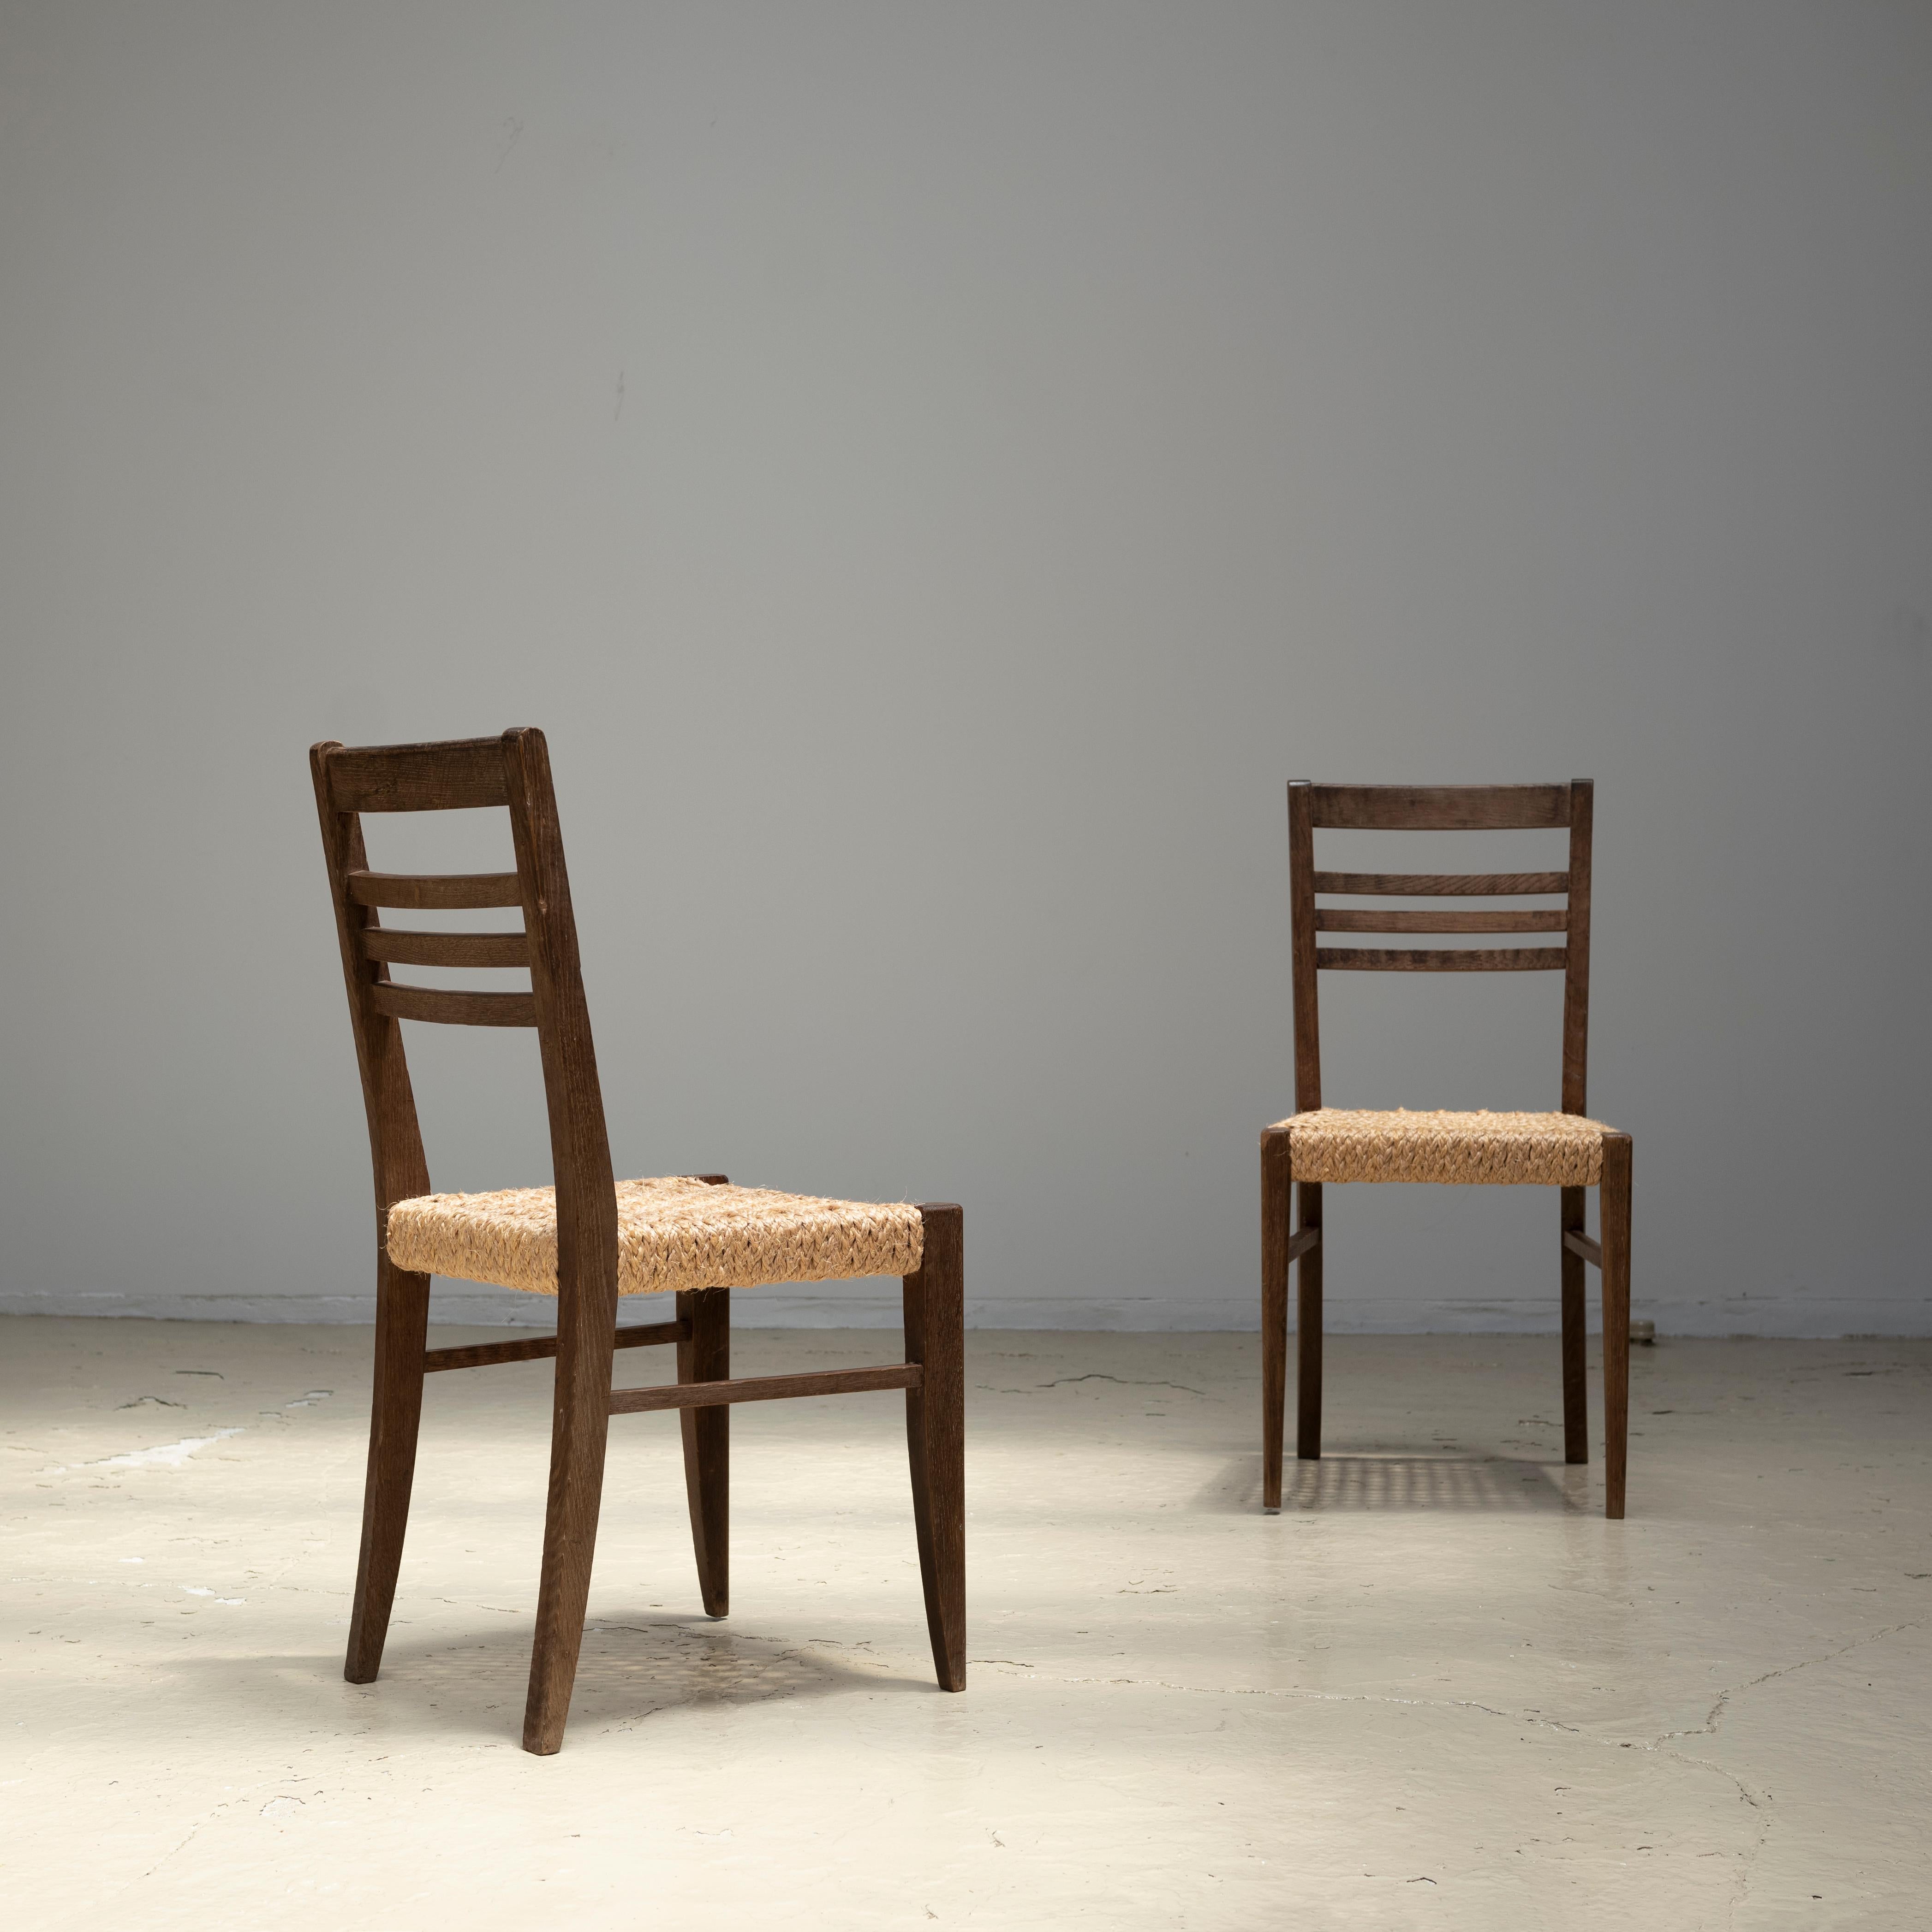 Ein Satz von zwei Esszimmerstühlen, entworfen von Adrien Audoux und Frida Minet in den 1950er Jahren.
Besteht aus einer Eichenholzstruktur und einem Sitz aus geflochtenem Seil.
Wird als Paar verkauft.